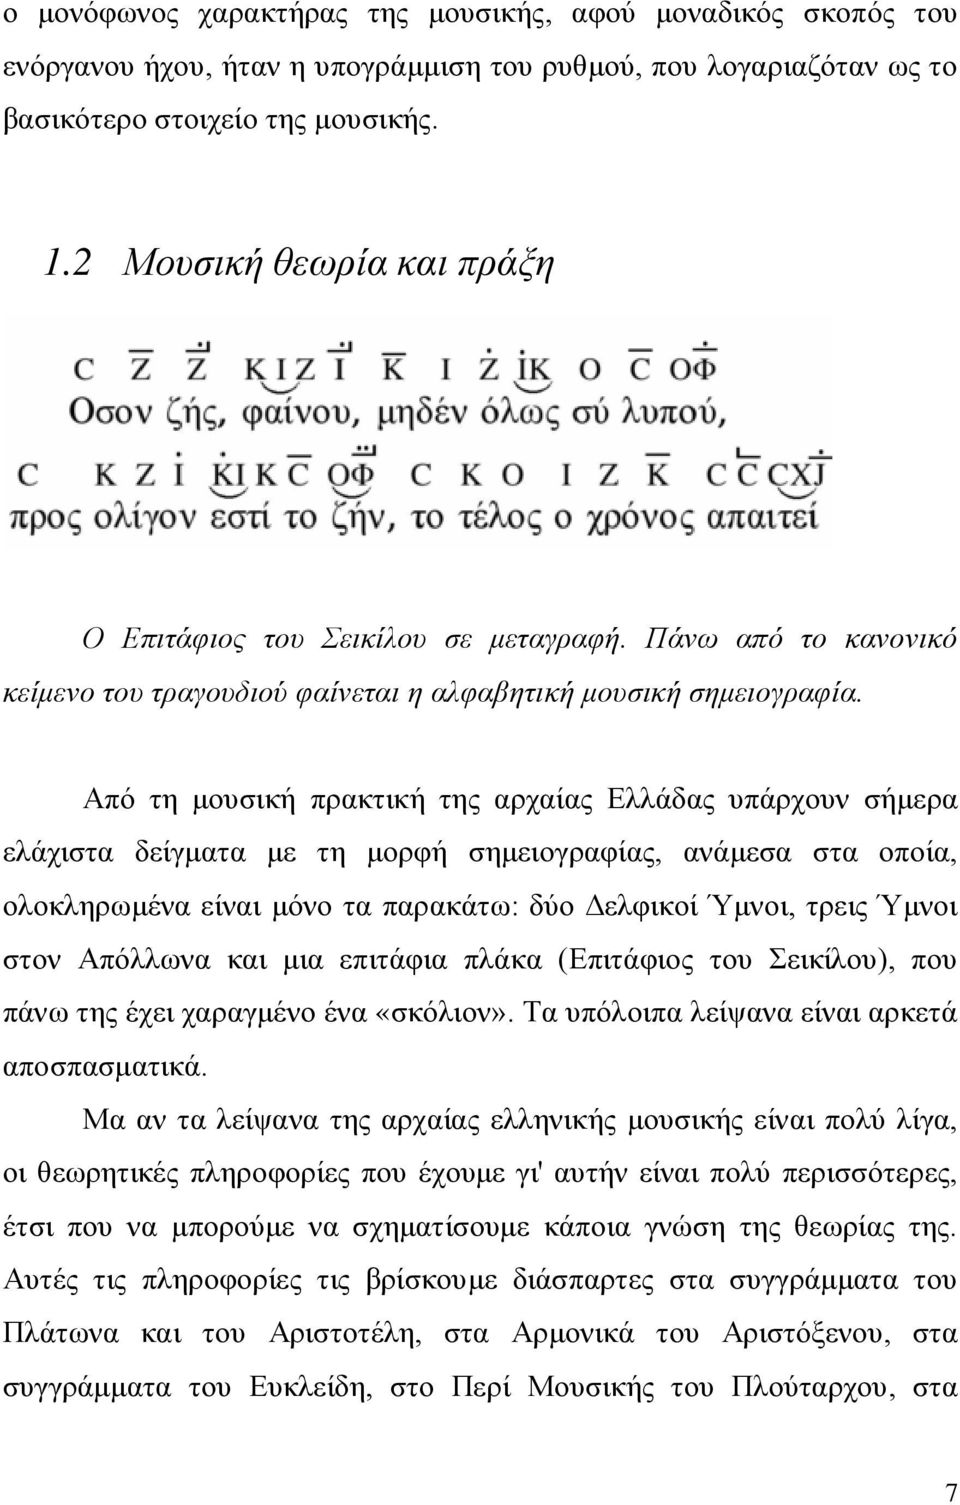 Από τη μουσική πρακτική της αρχαίας Ελλάδας υπάρχουν σήμερα ελάχιστα δείγματα με τη μορφή σημειογραφίας, ανάμεσα στα οποία, ολοκληρωμένα είναι μόνο τα παρακάτω: δύο Δελφικοί Ύμνοι, τρεις Ύμνοι στον